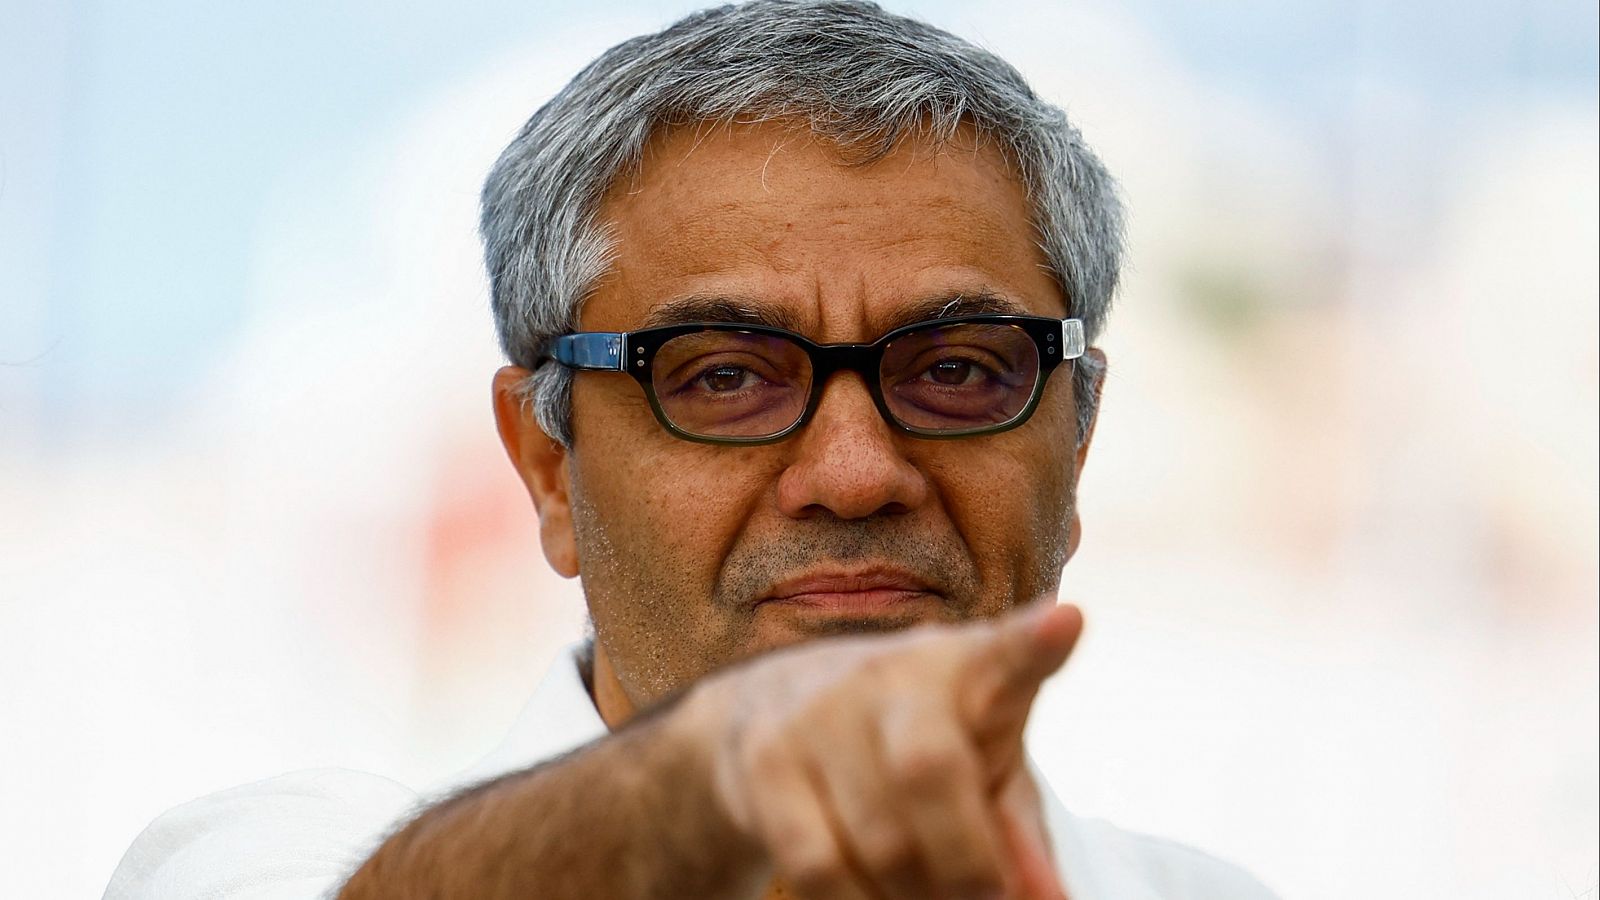 El iraní Rasoulof, uno de los favoritos para la Palma de Oro en Cannes